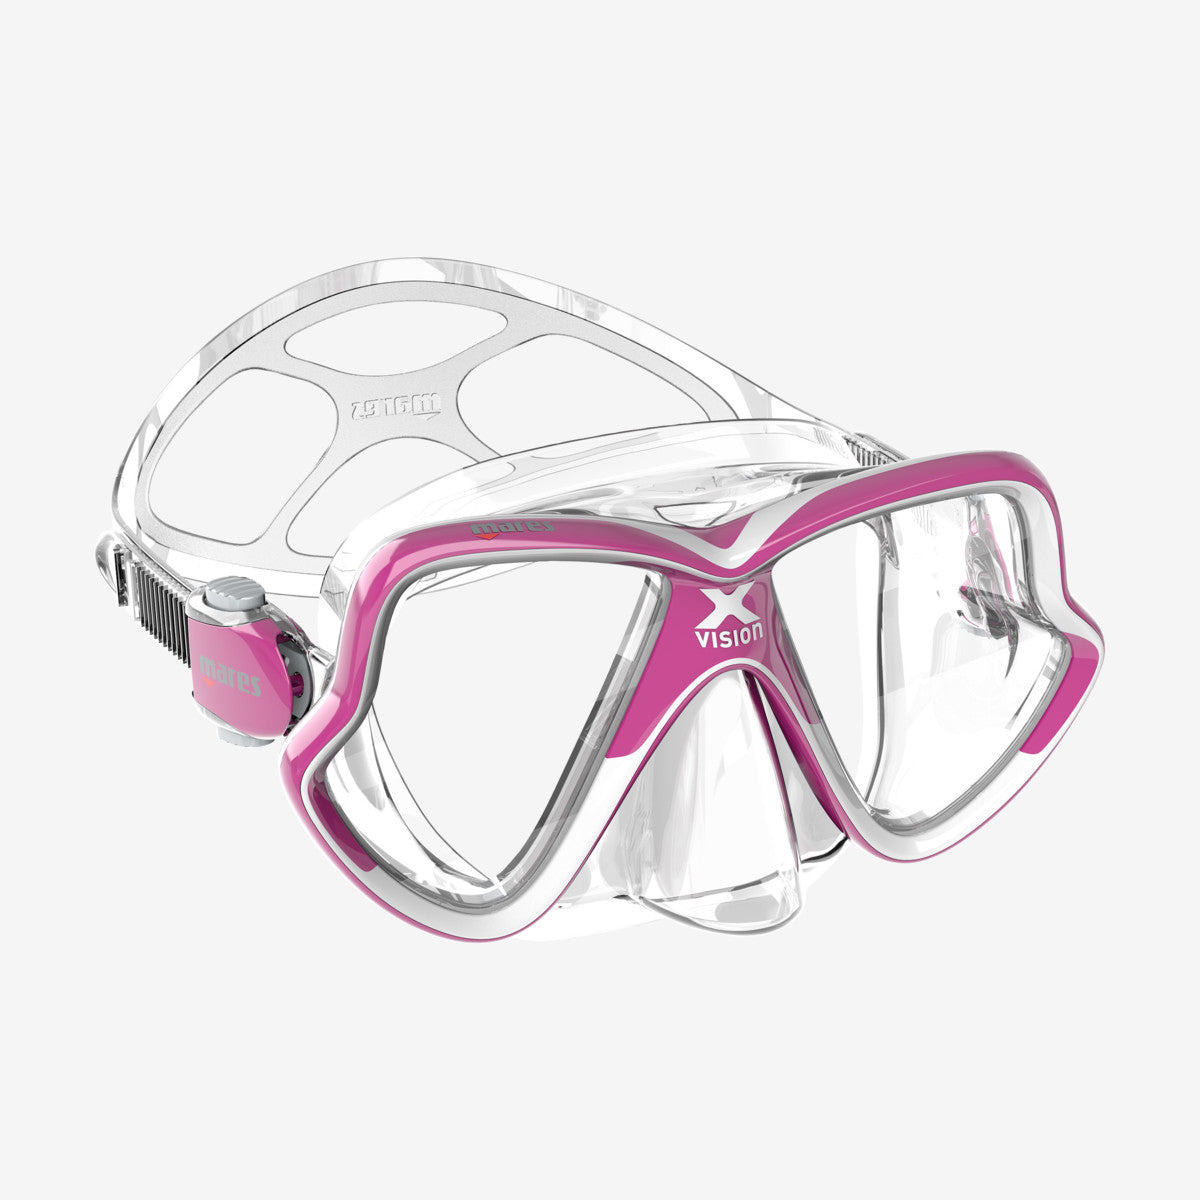 X-Vision Mid 2.0 Maschera Subacquea per Diving e Snorkeling a Lenti Inclinate